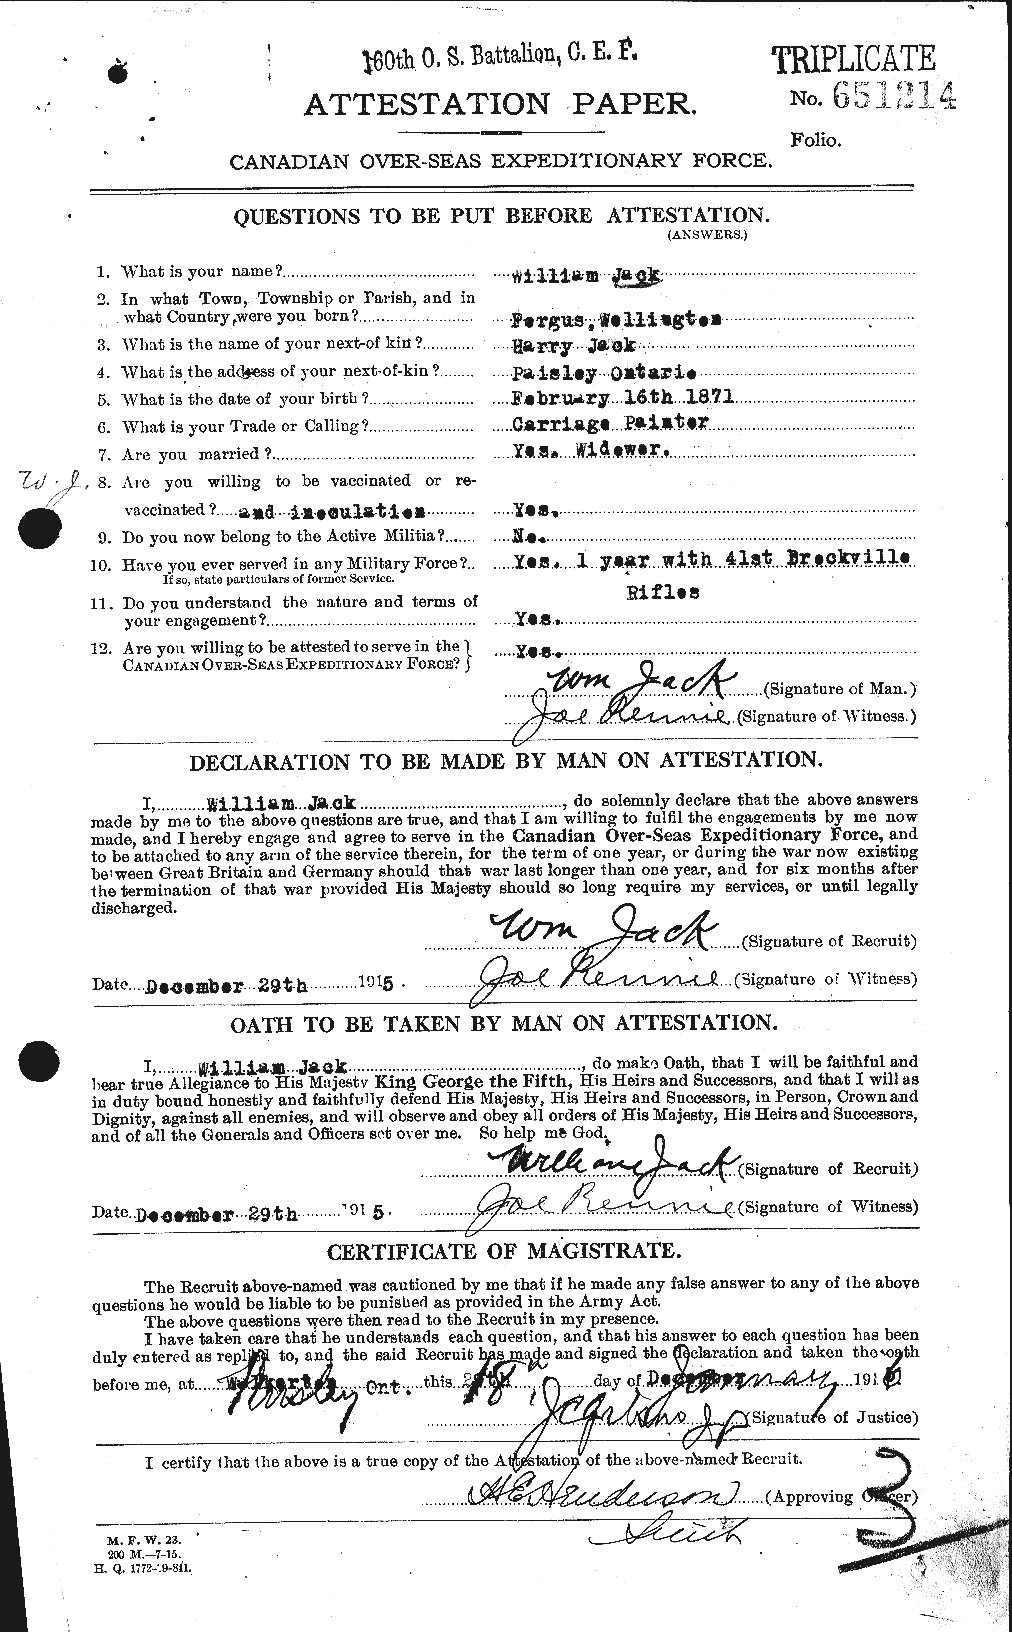 Dossiers du Personnel de la Première Guerre mondiale - CEC 409772a